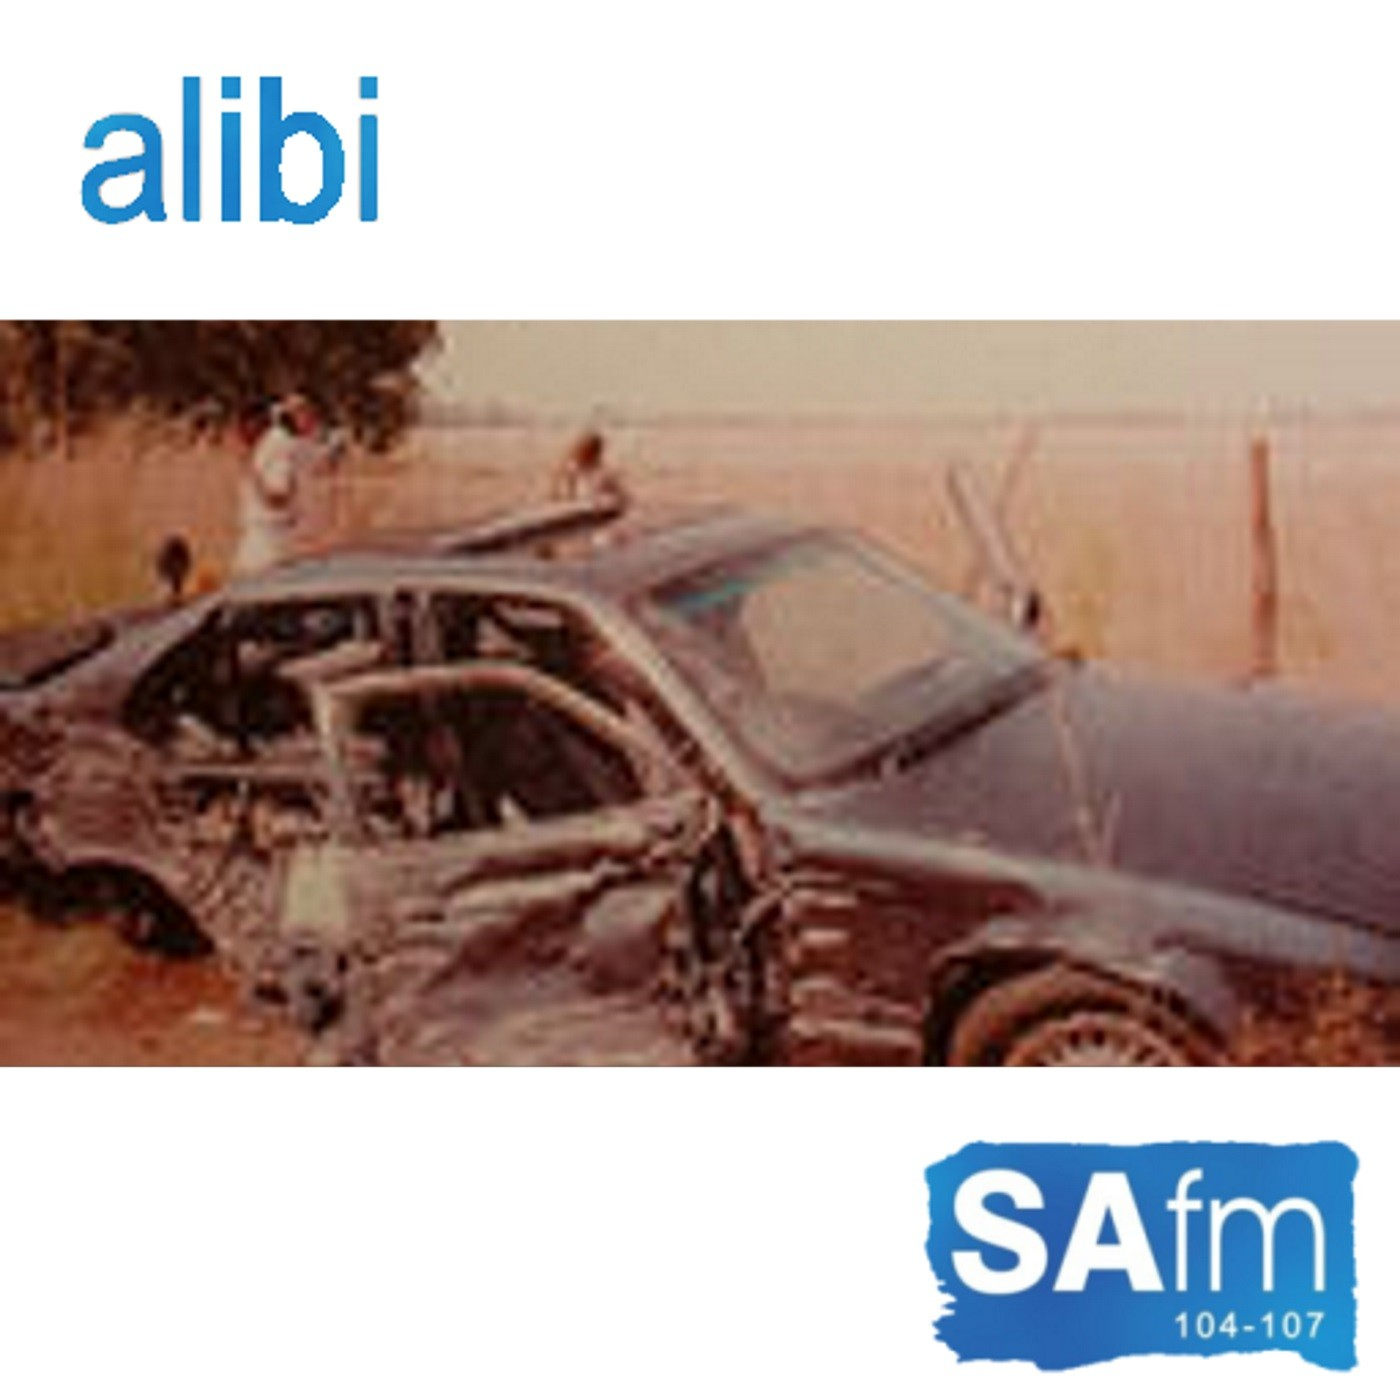 Alibi radio series - Episode 2